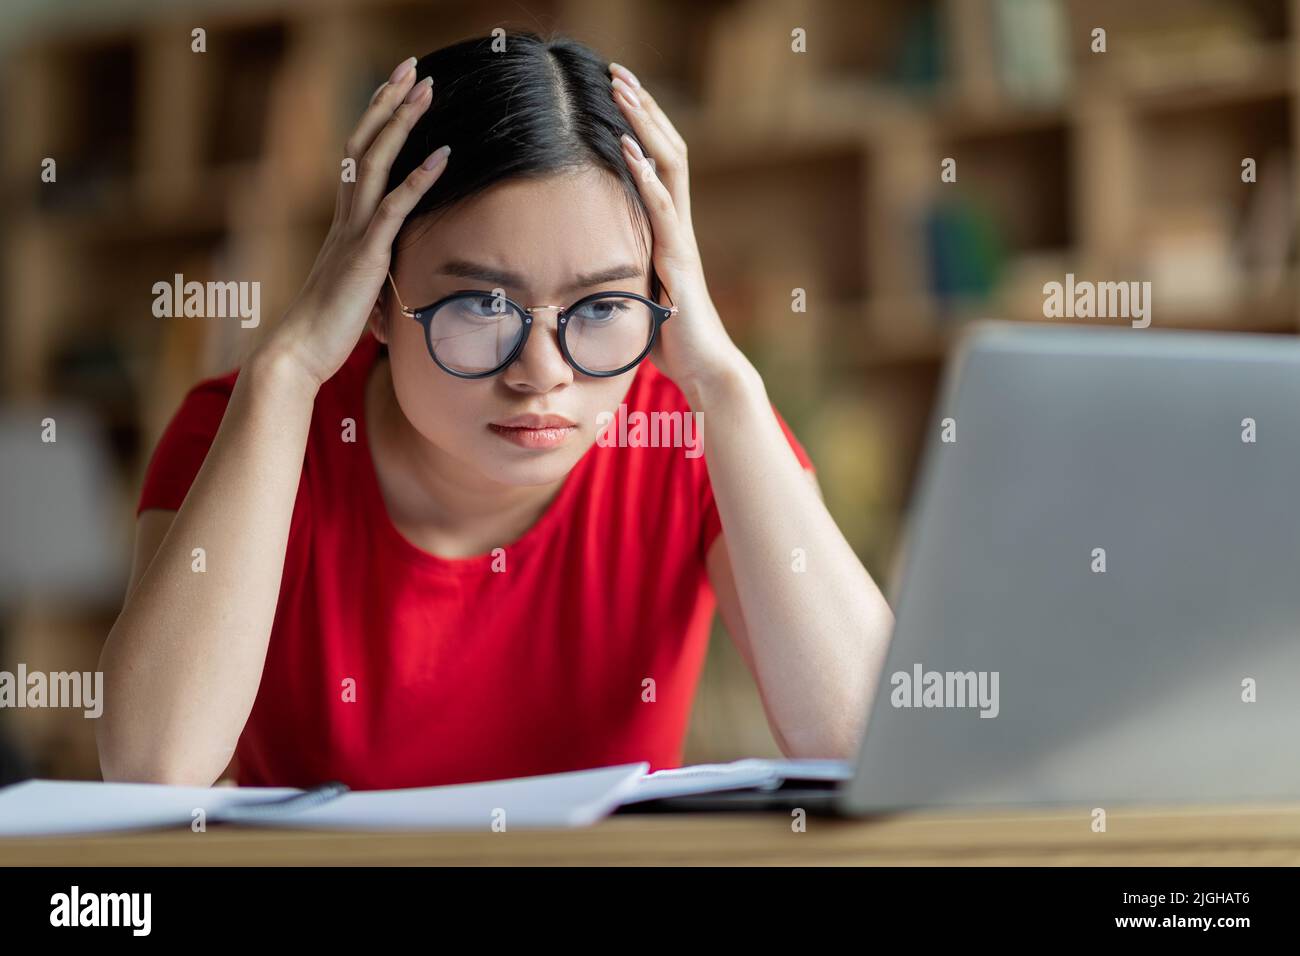 Concentrée occupé jeune fille asiatique dans les lunettes tenir la tête avec les mains, regarder l'ordinateur dans l'intérieur de la chambre Banque D'Images